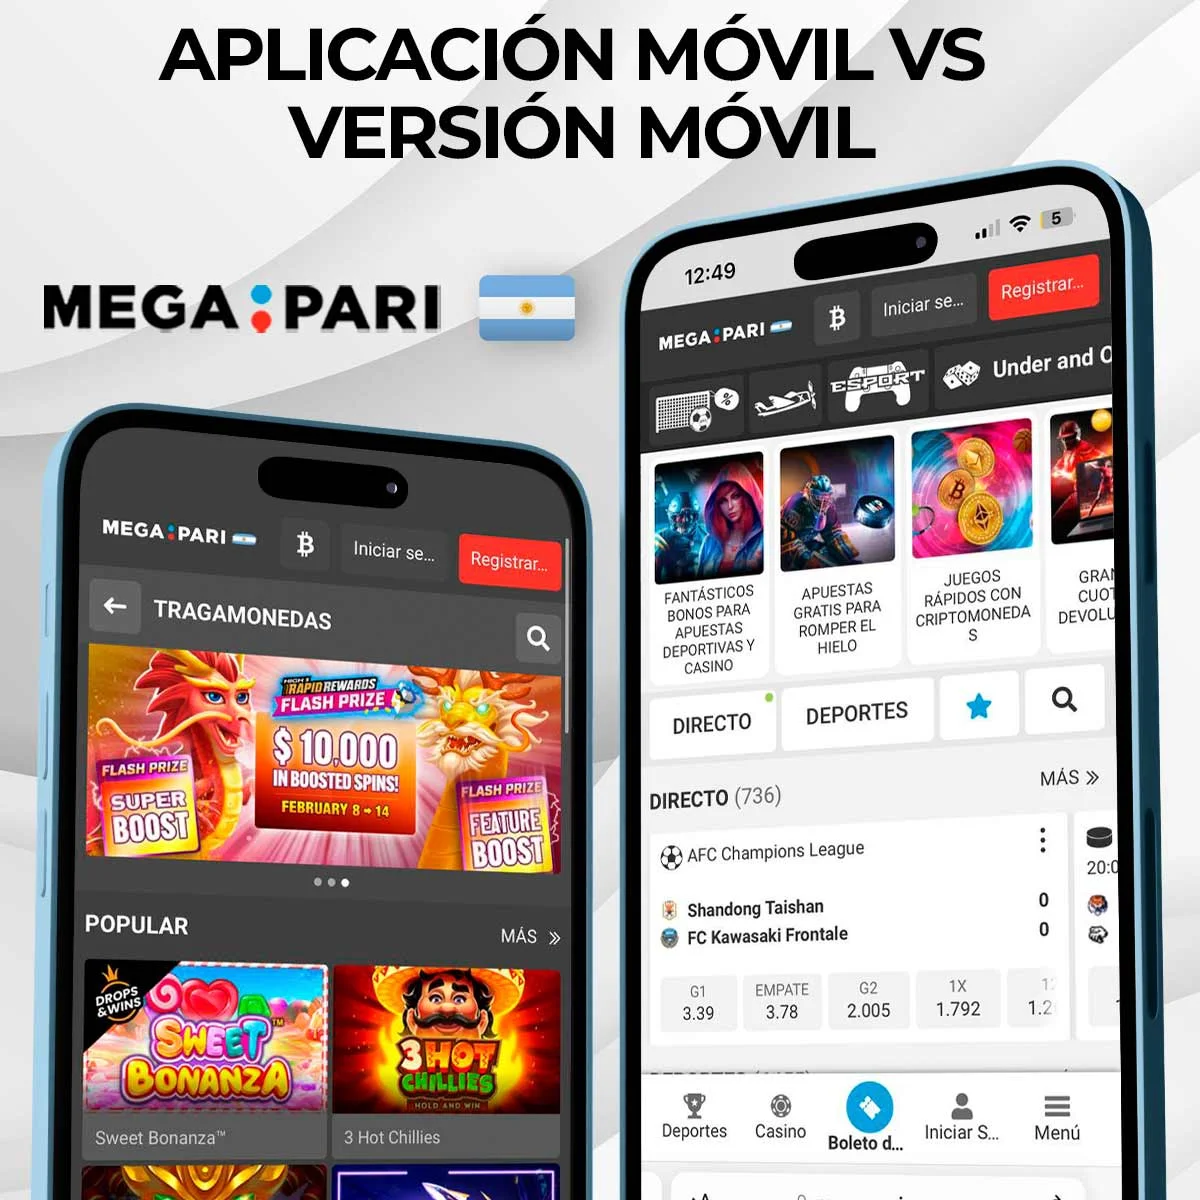 Comparación entre el sitio web móvil de Megapari y la aplicación móvil de Megapari